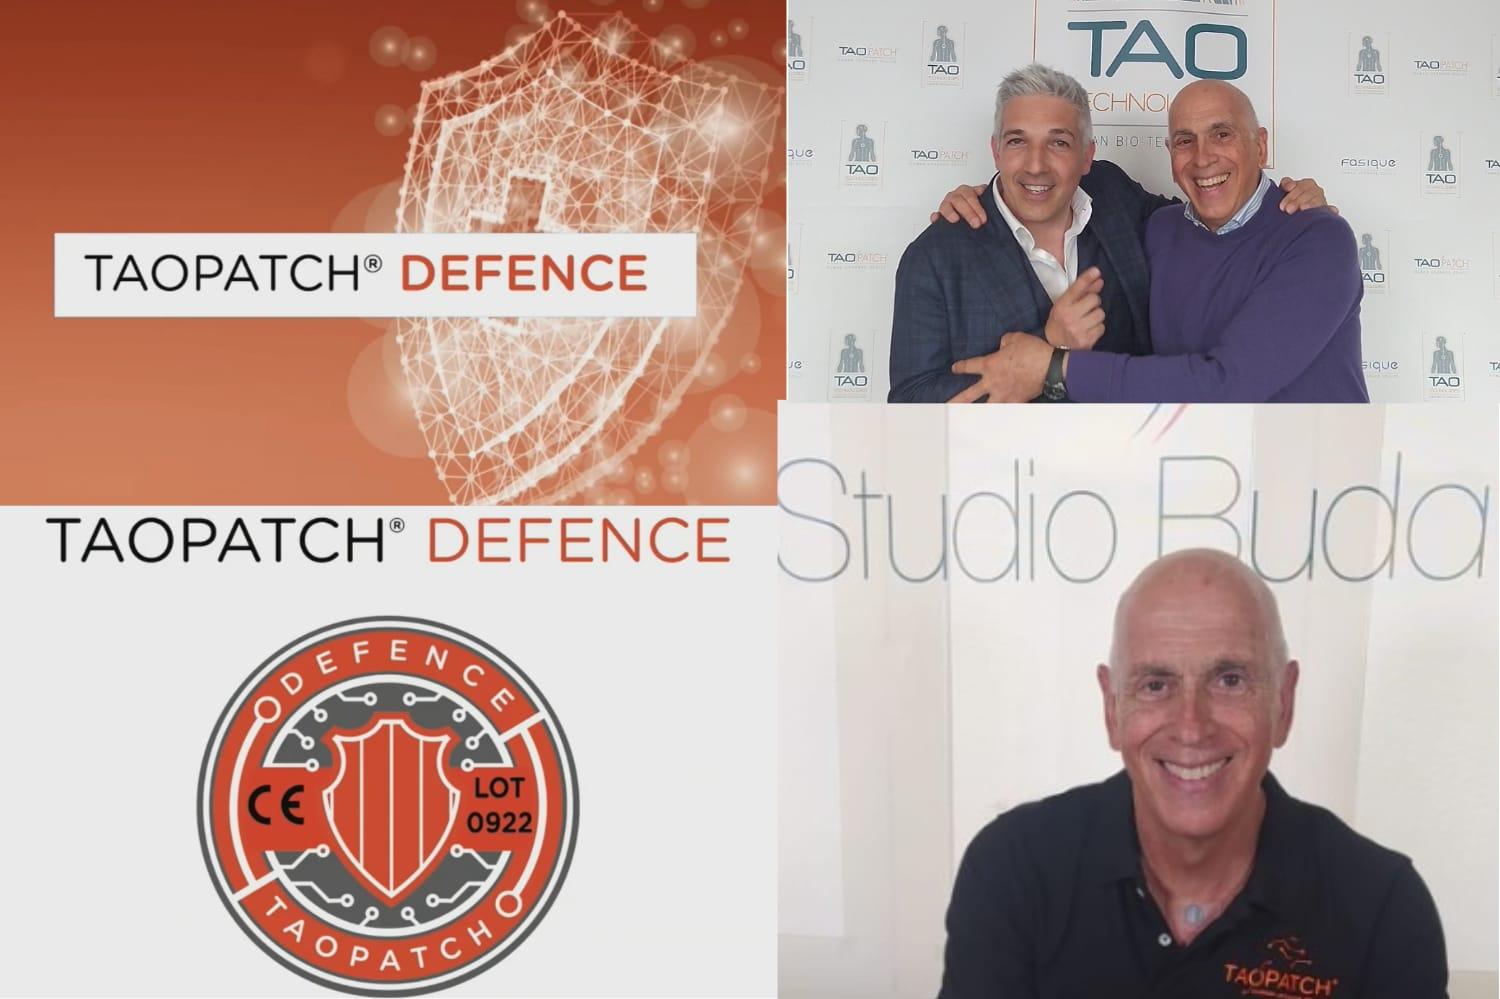 Dopo i successi ottenuti tra malati ed atleti, nasce "Taopatch Defense" per persone costantemente a rischio. Intervista al dottor Massimo Buda di Napoli.